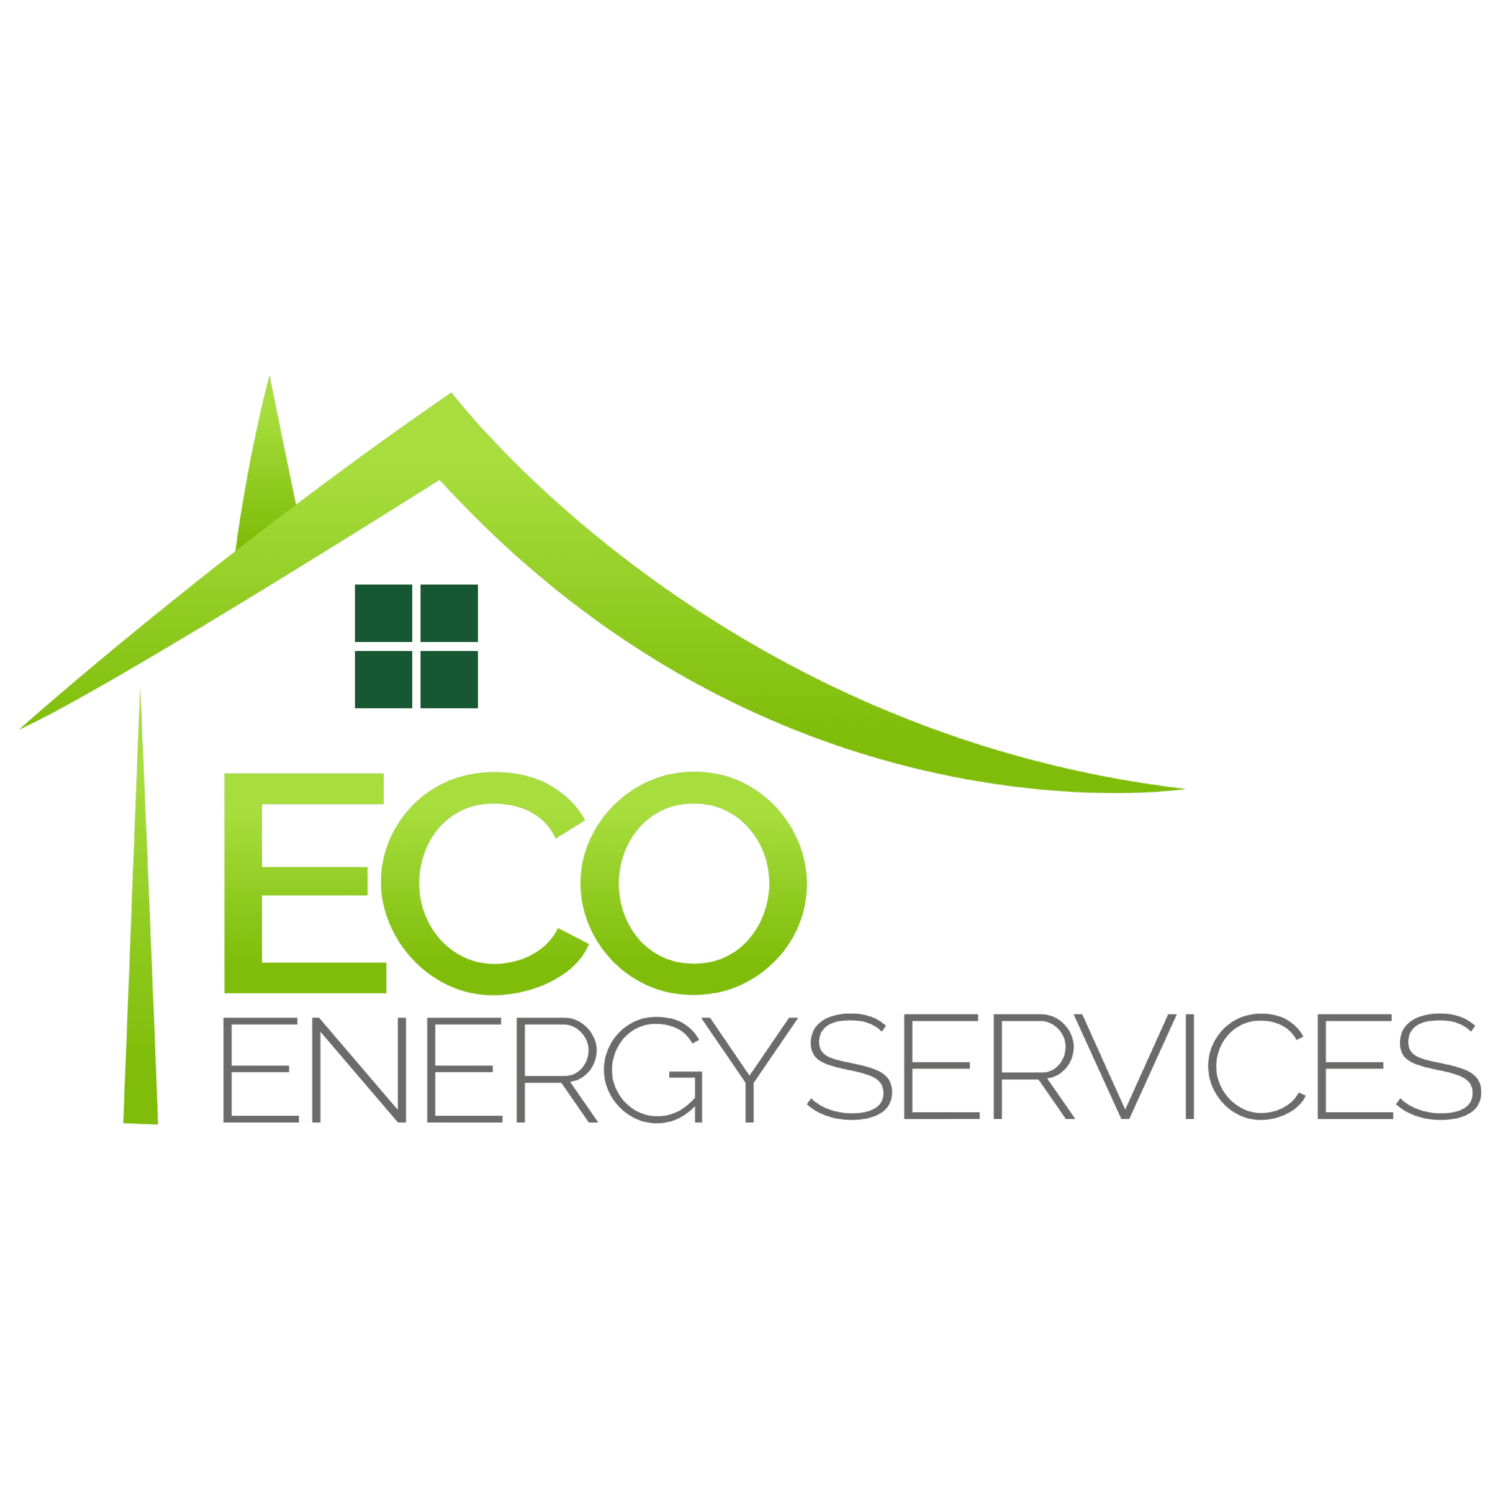 ECO Energy Services